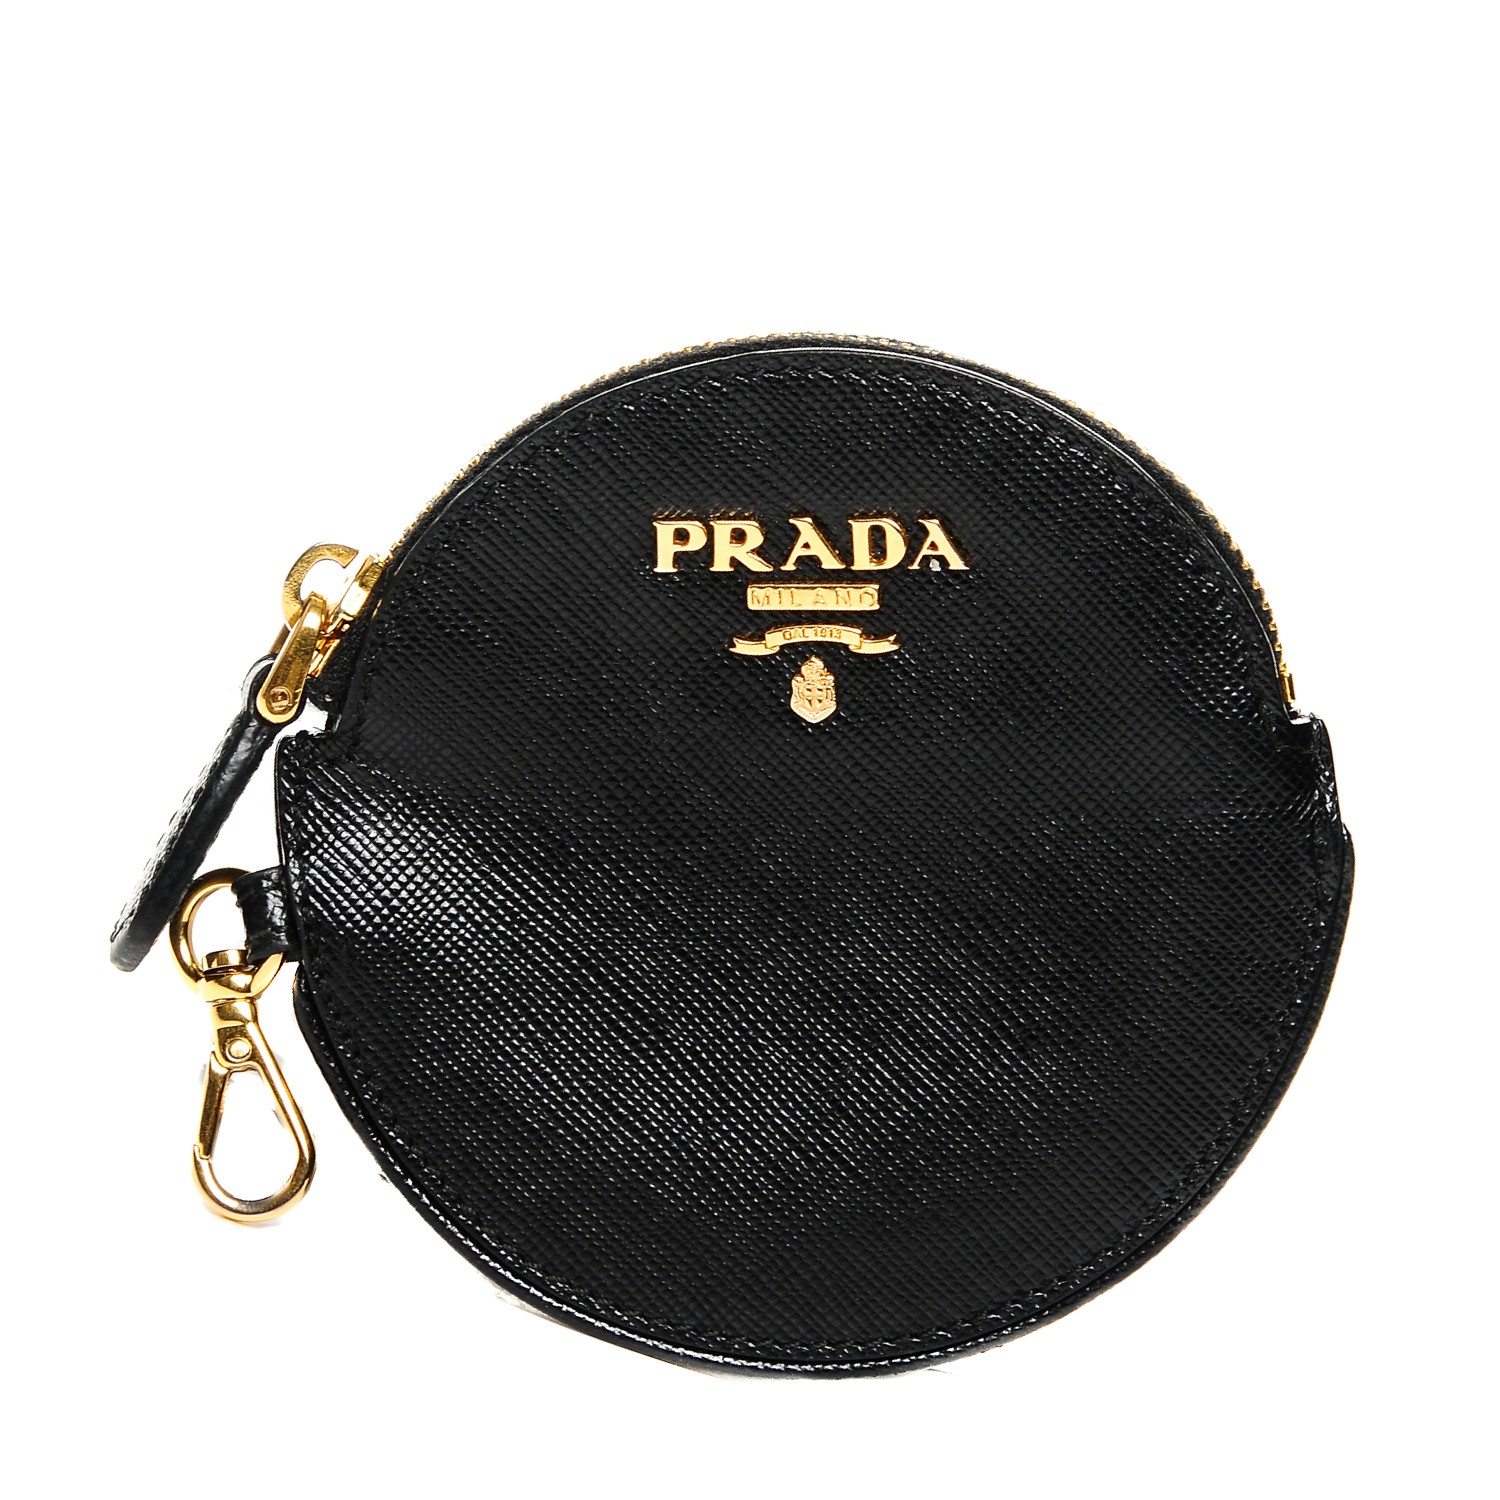 prada circle bag